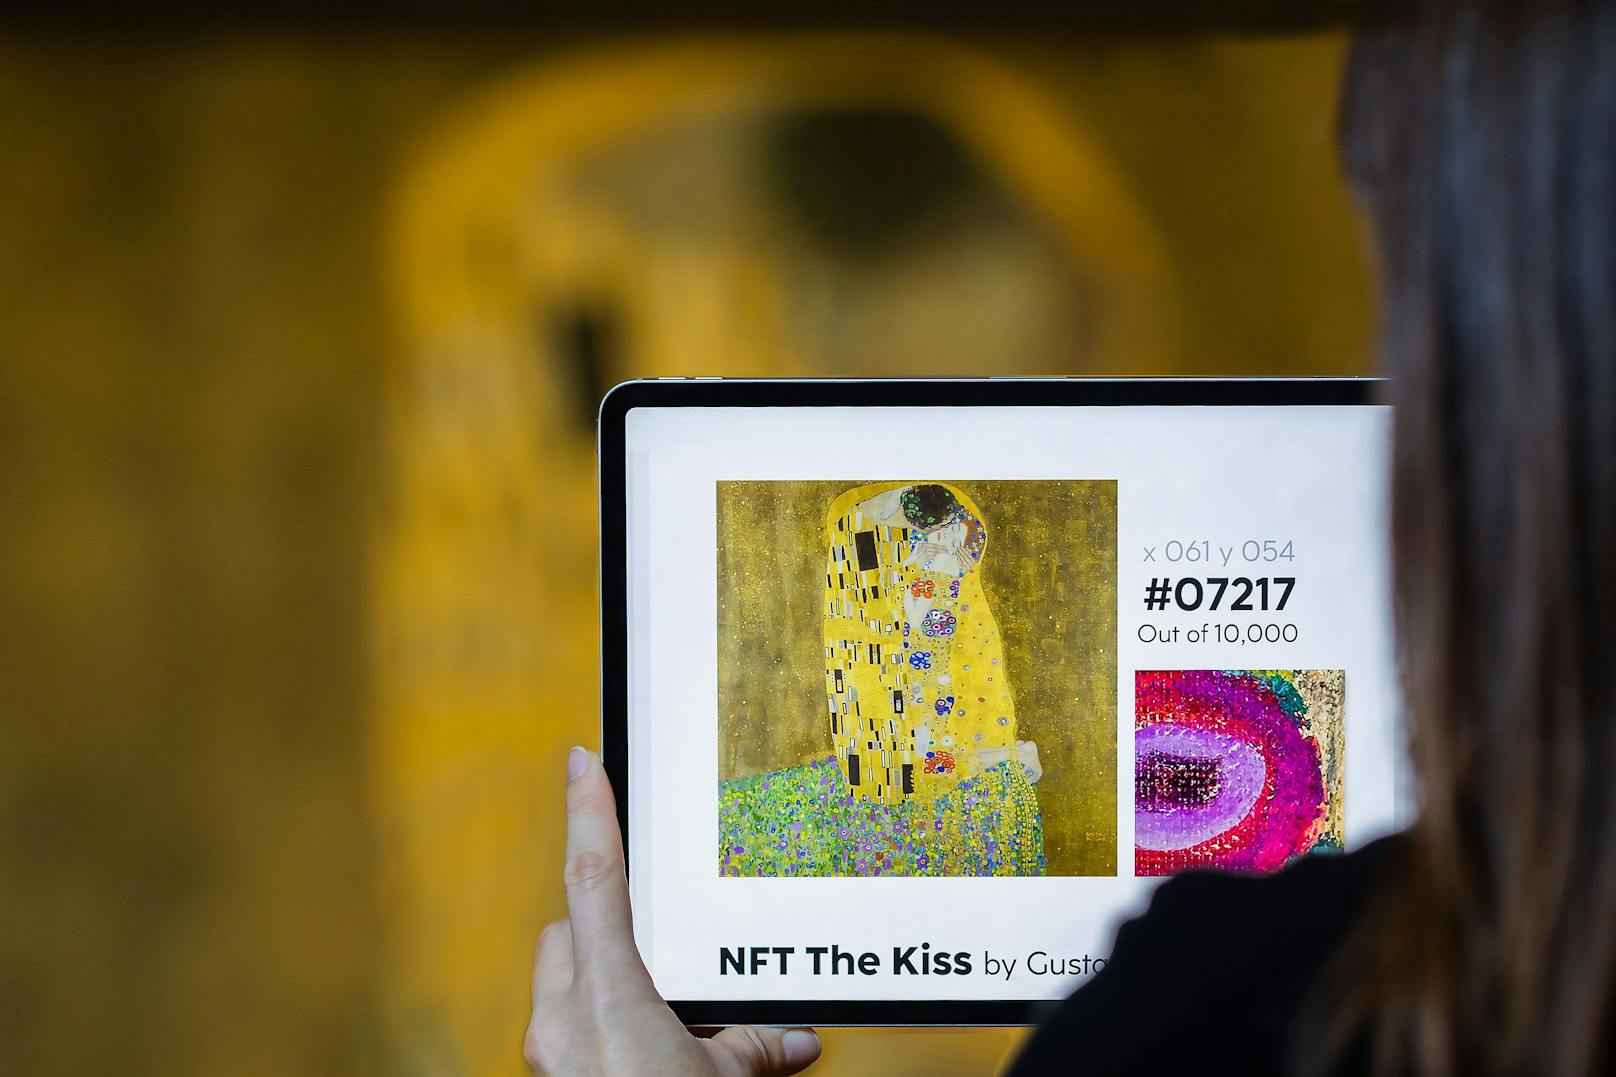 Ein Stück von Klimts "Der Kuss" gibt's um 1.850 Euro